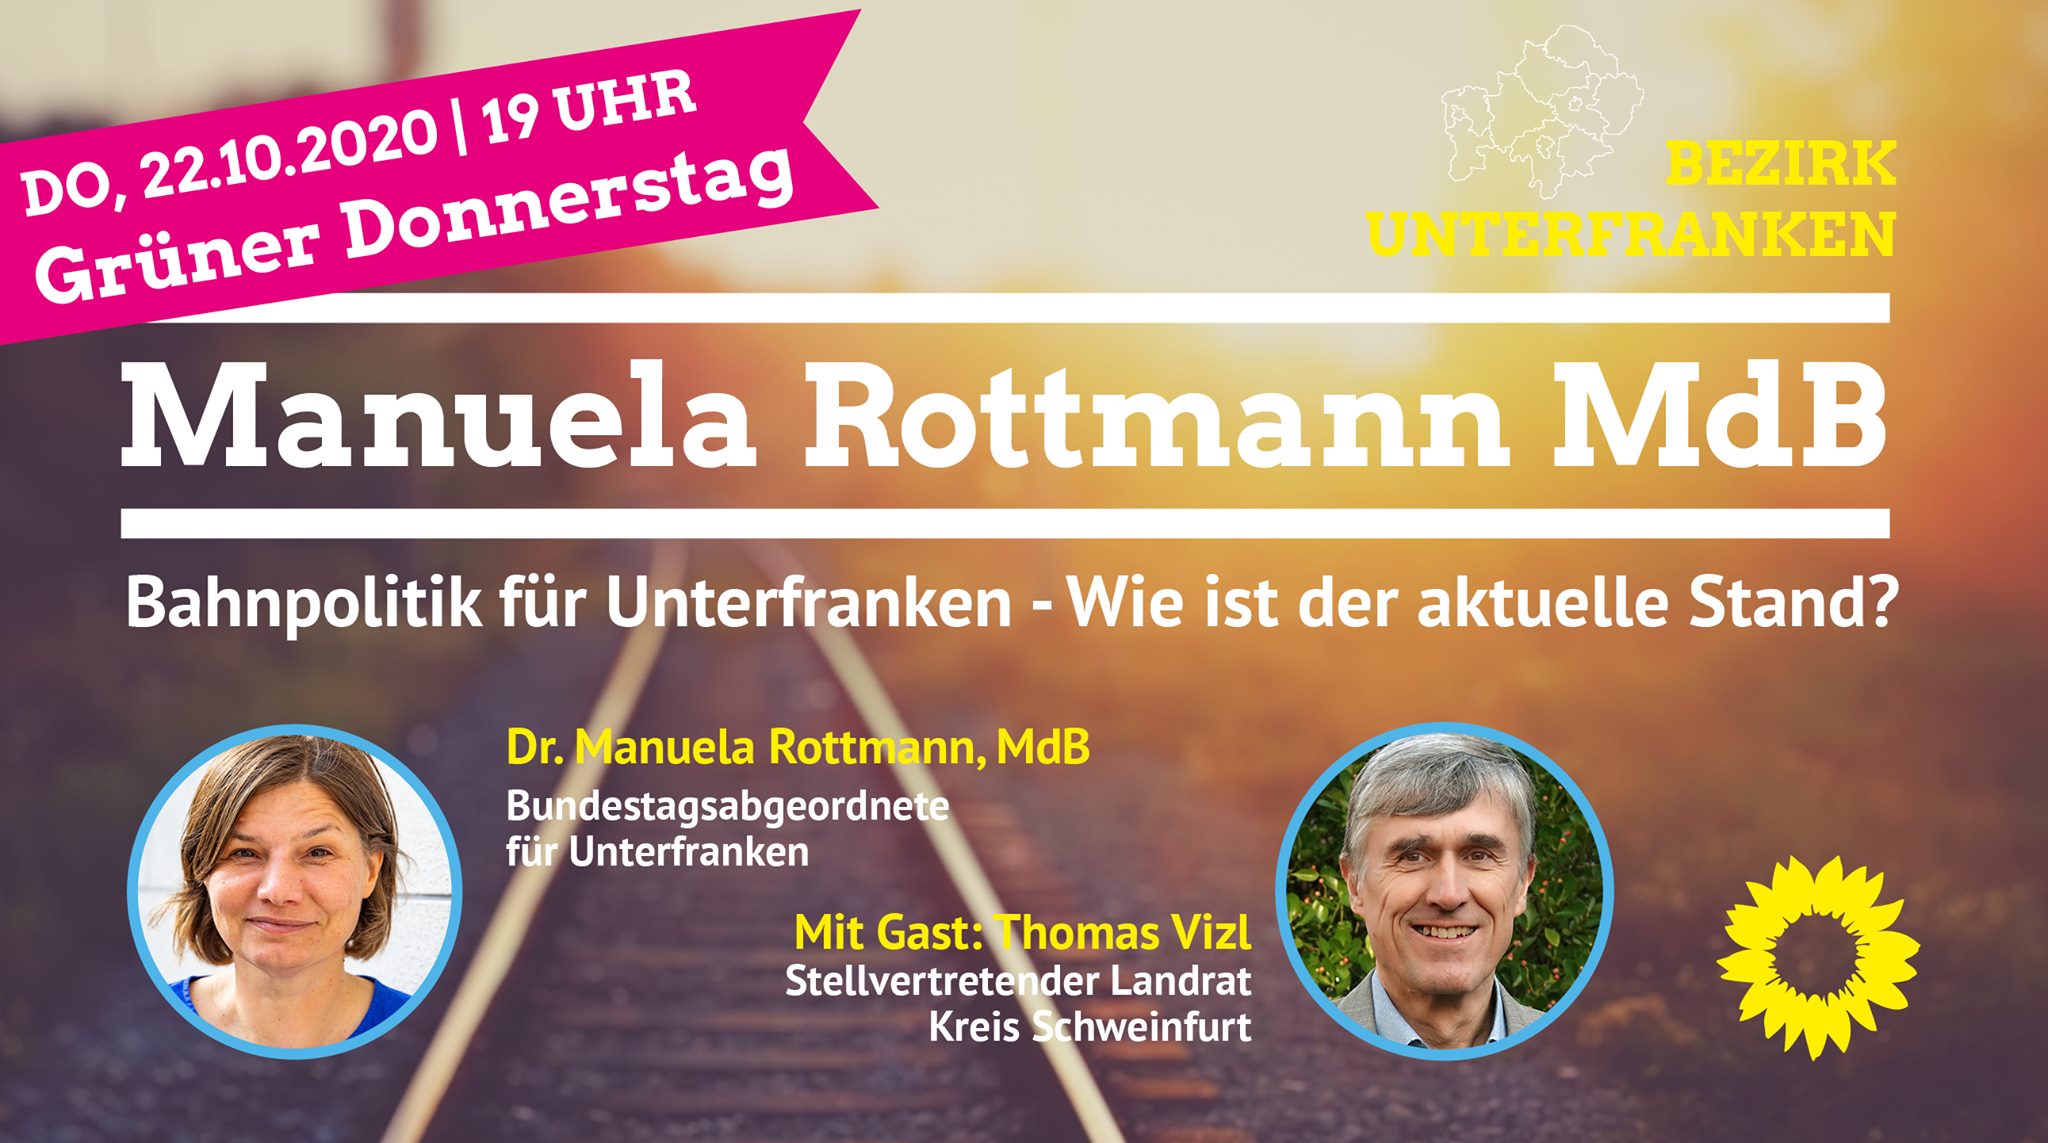 Dr. Manuela Rottmann MdB "Bahnpolitik für Unterfranken - Wie ist der aktuelle Stand?"